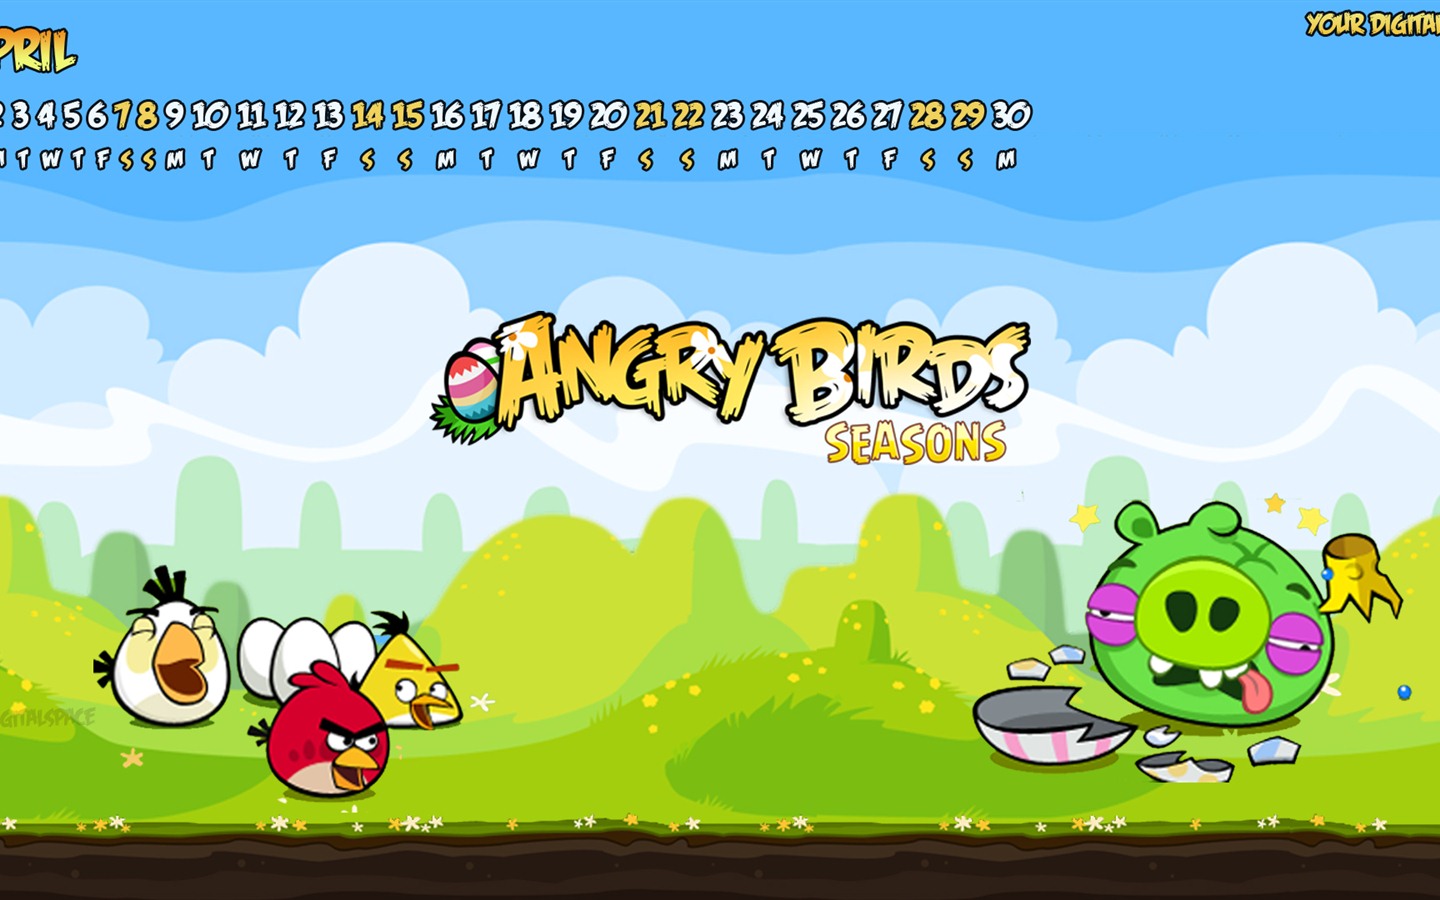 Angry Birds 2012 calendar wallpaper #2 - 1440x900